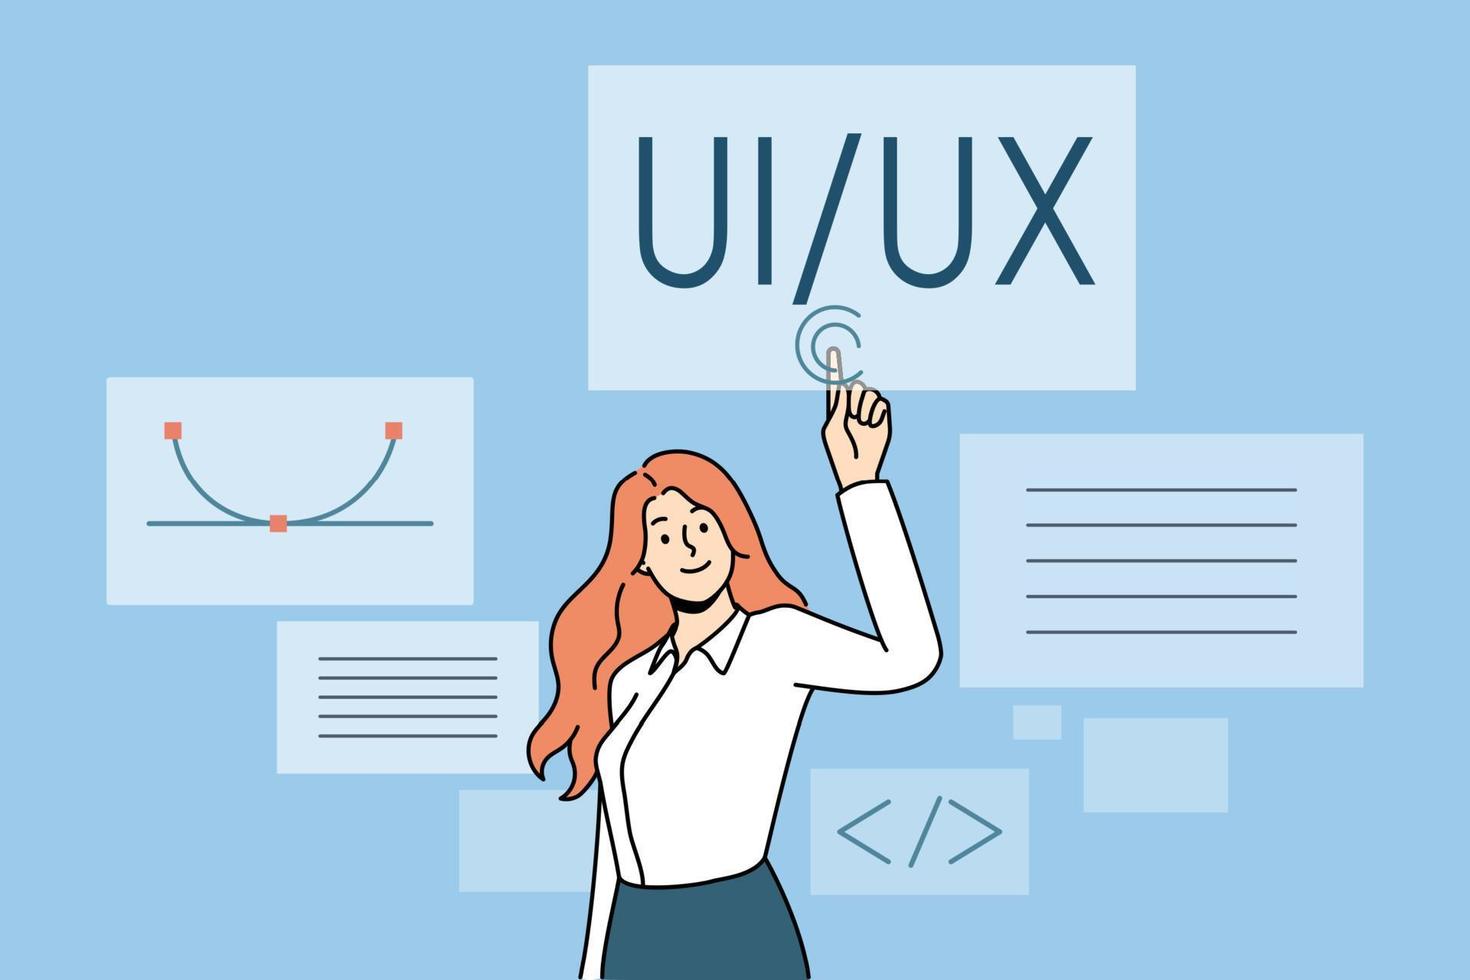 användare gränssnitt och erfarenhet begrepp. ung kvinna webb designer dator programmerare stående och pekande på ui ux vektor illustration